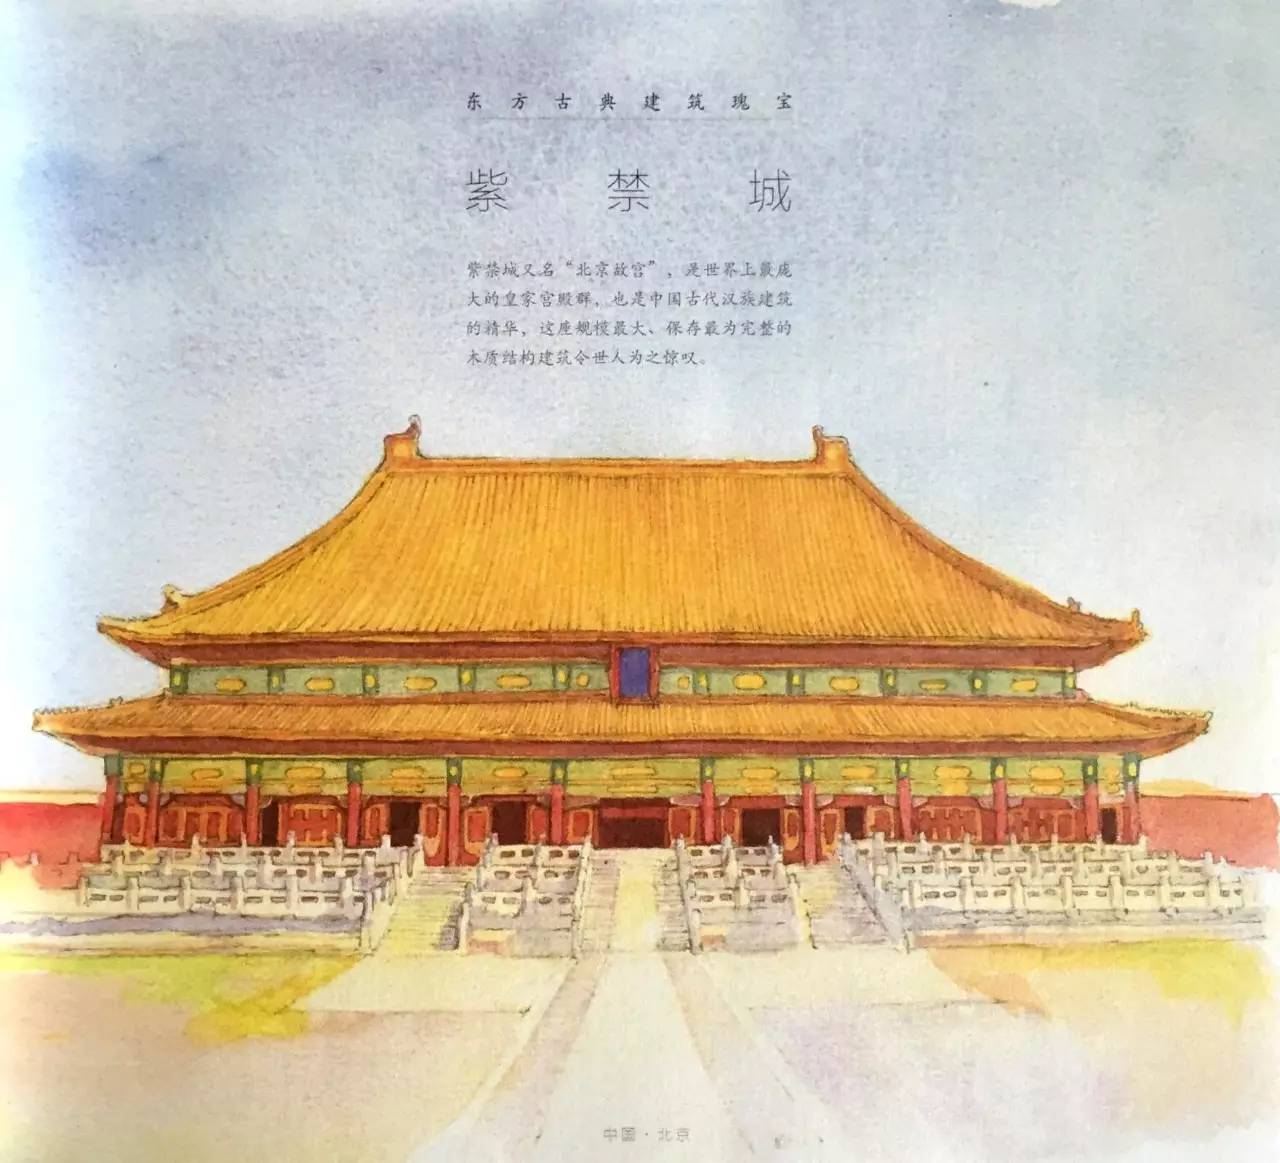 紫禁城又名"北京故宫",是世界上最庞大的皇家宫殿群,也是中国古代汉族